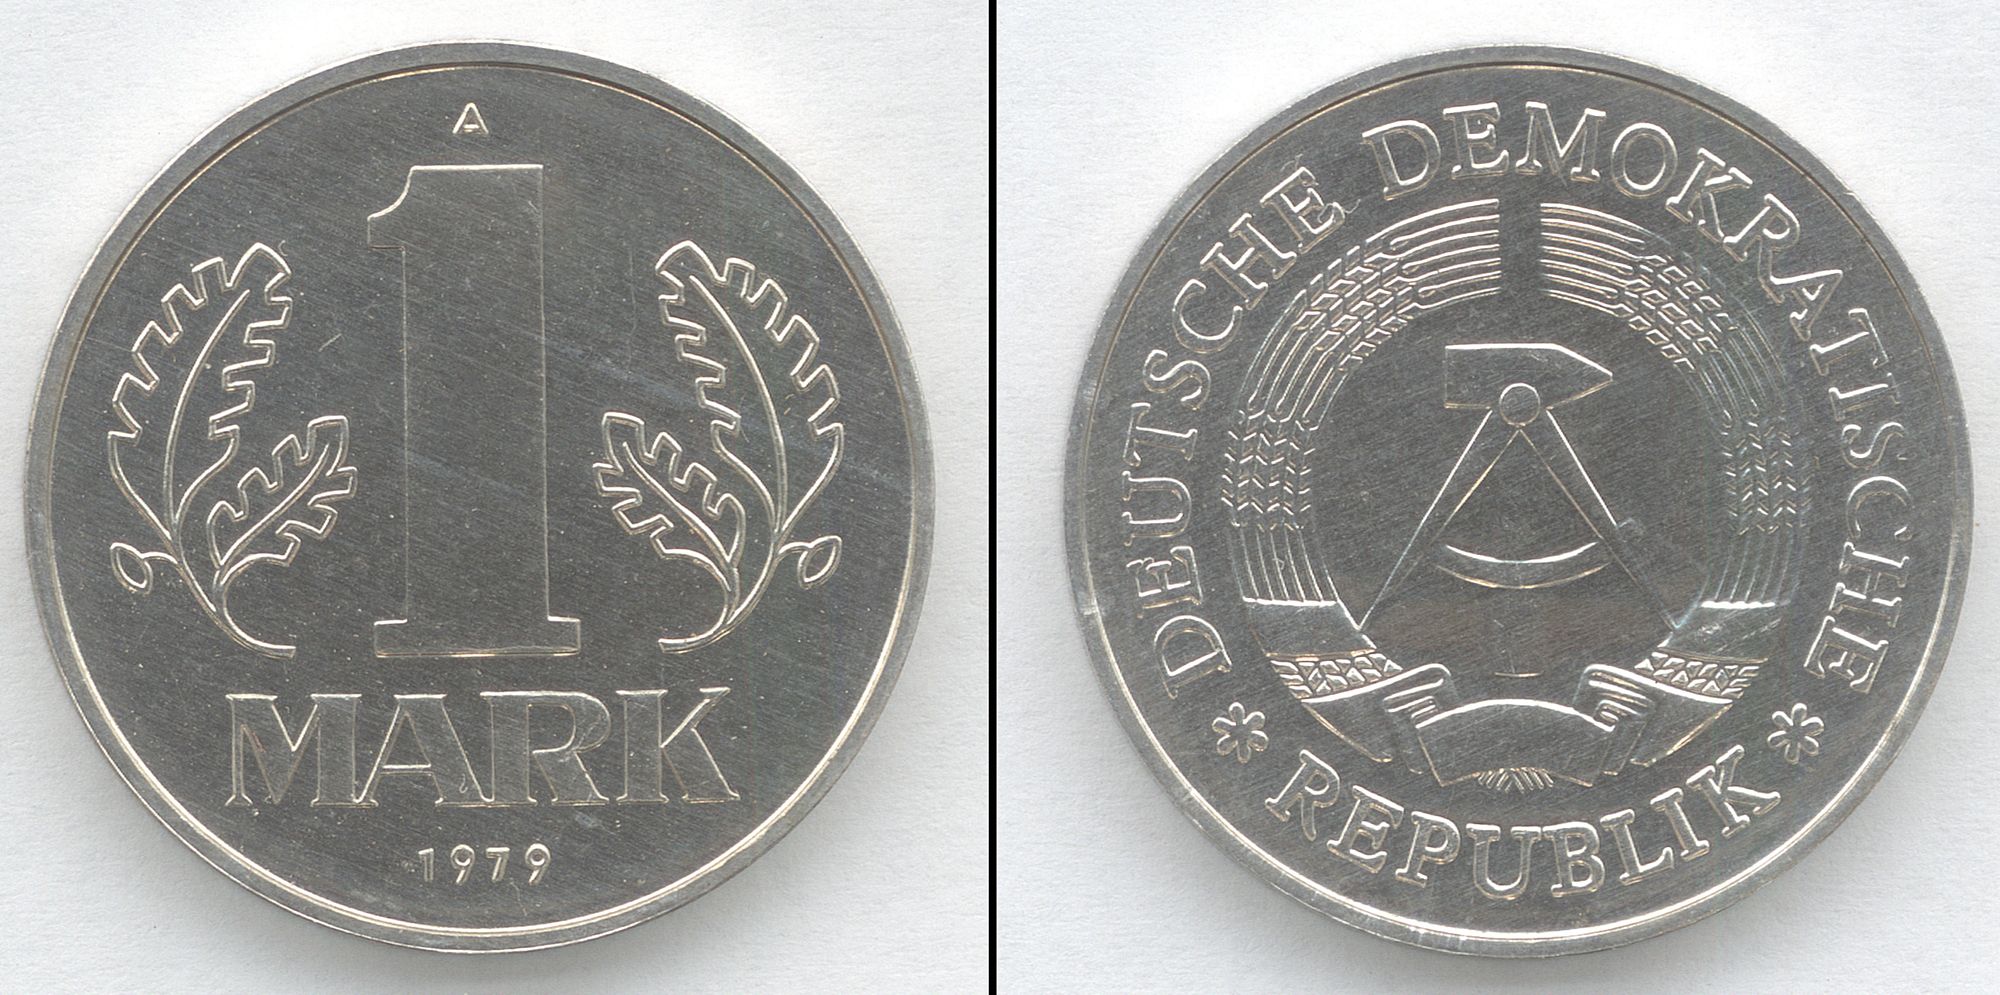 DDR-Münzen, auch Alu-Chips genannt, werden jedoch nicht akzeptiert.